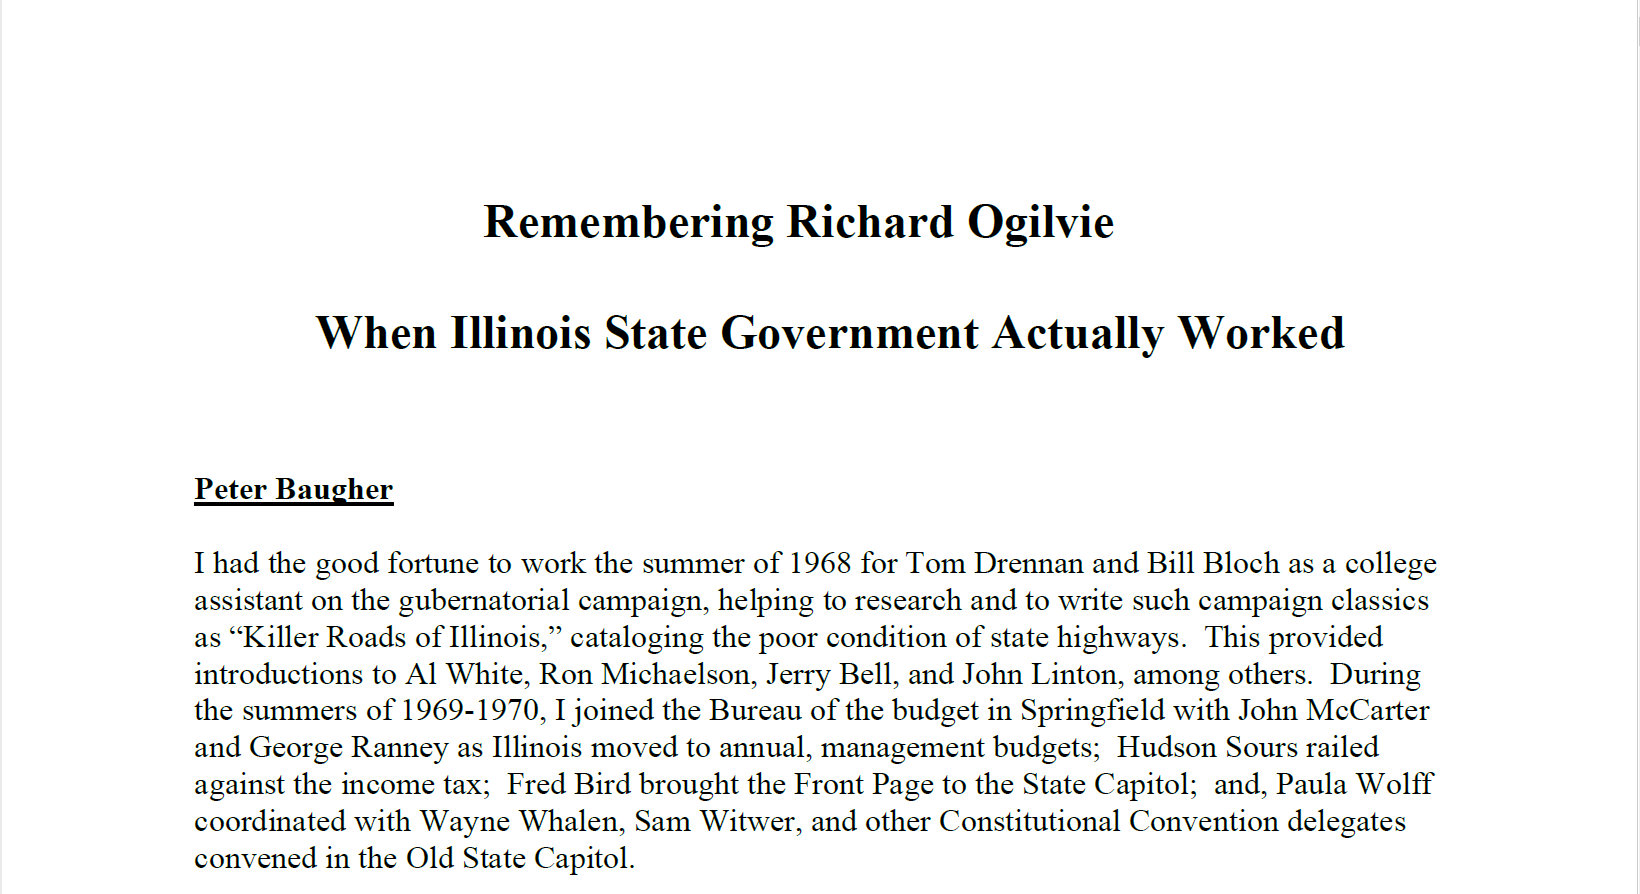 Document: Remembering Richard Ogilvie